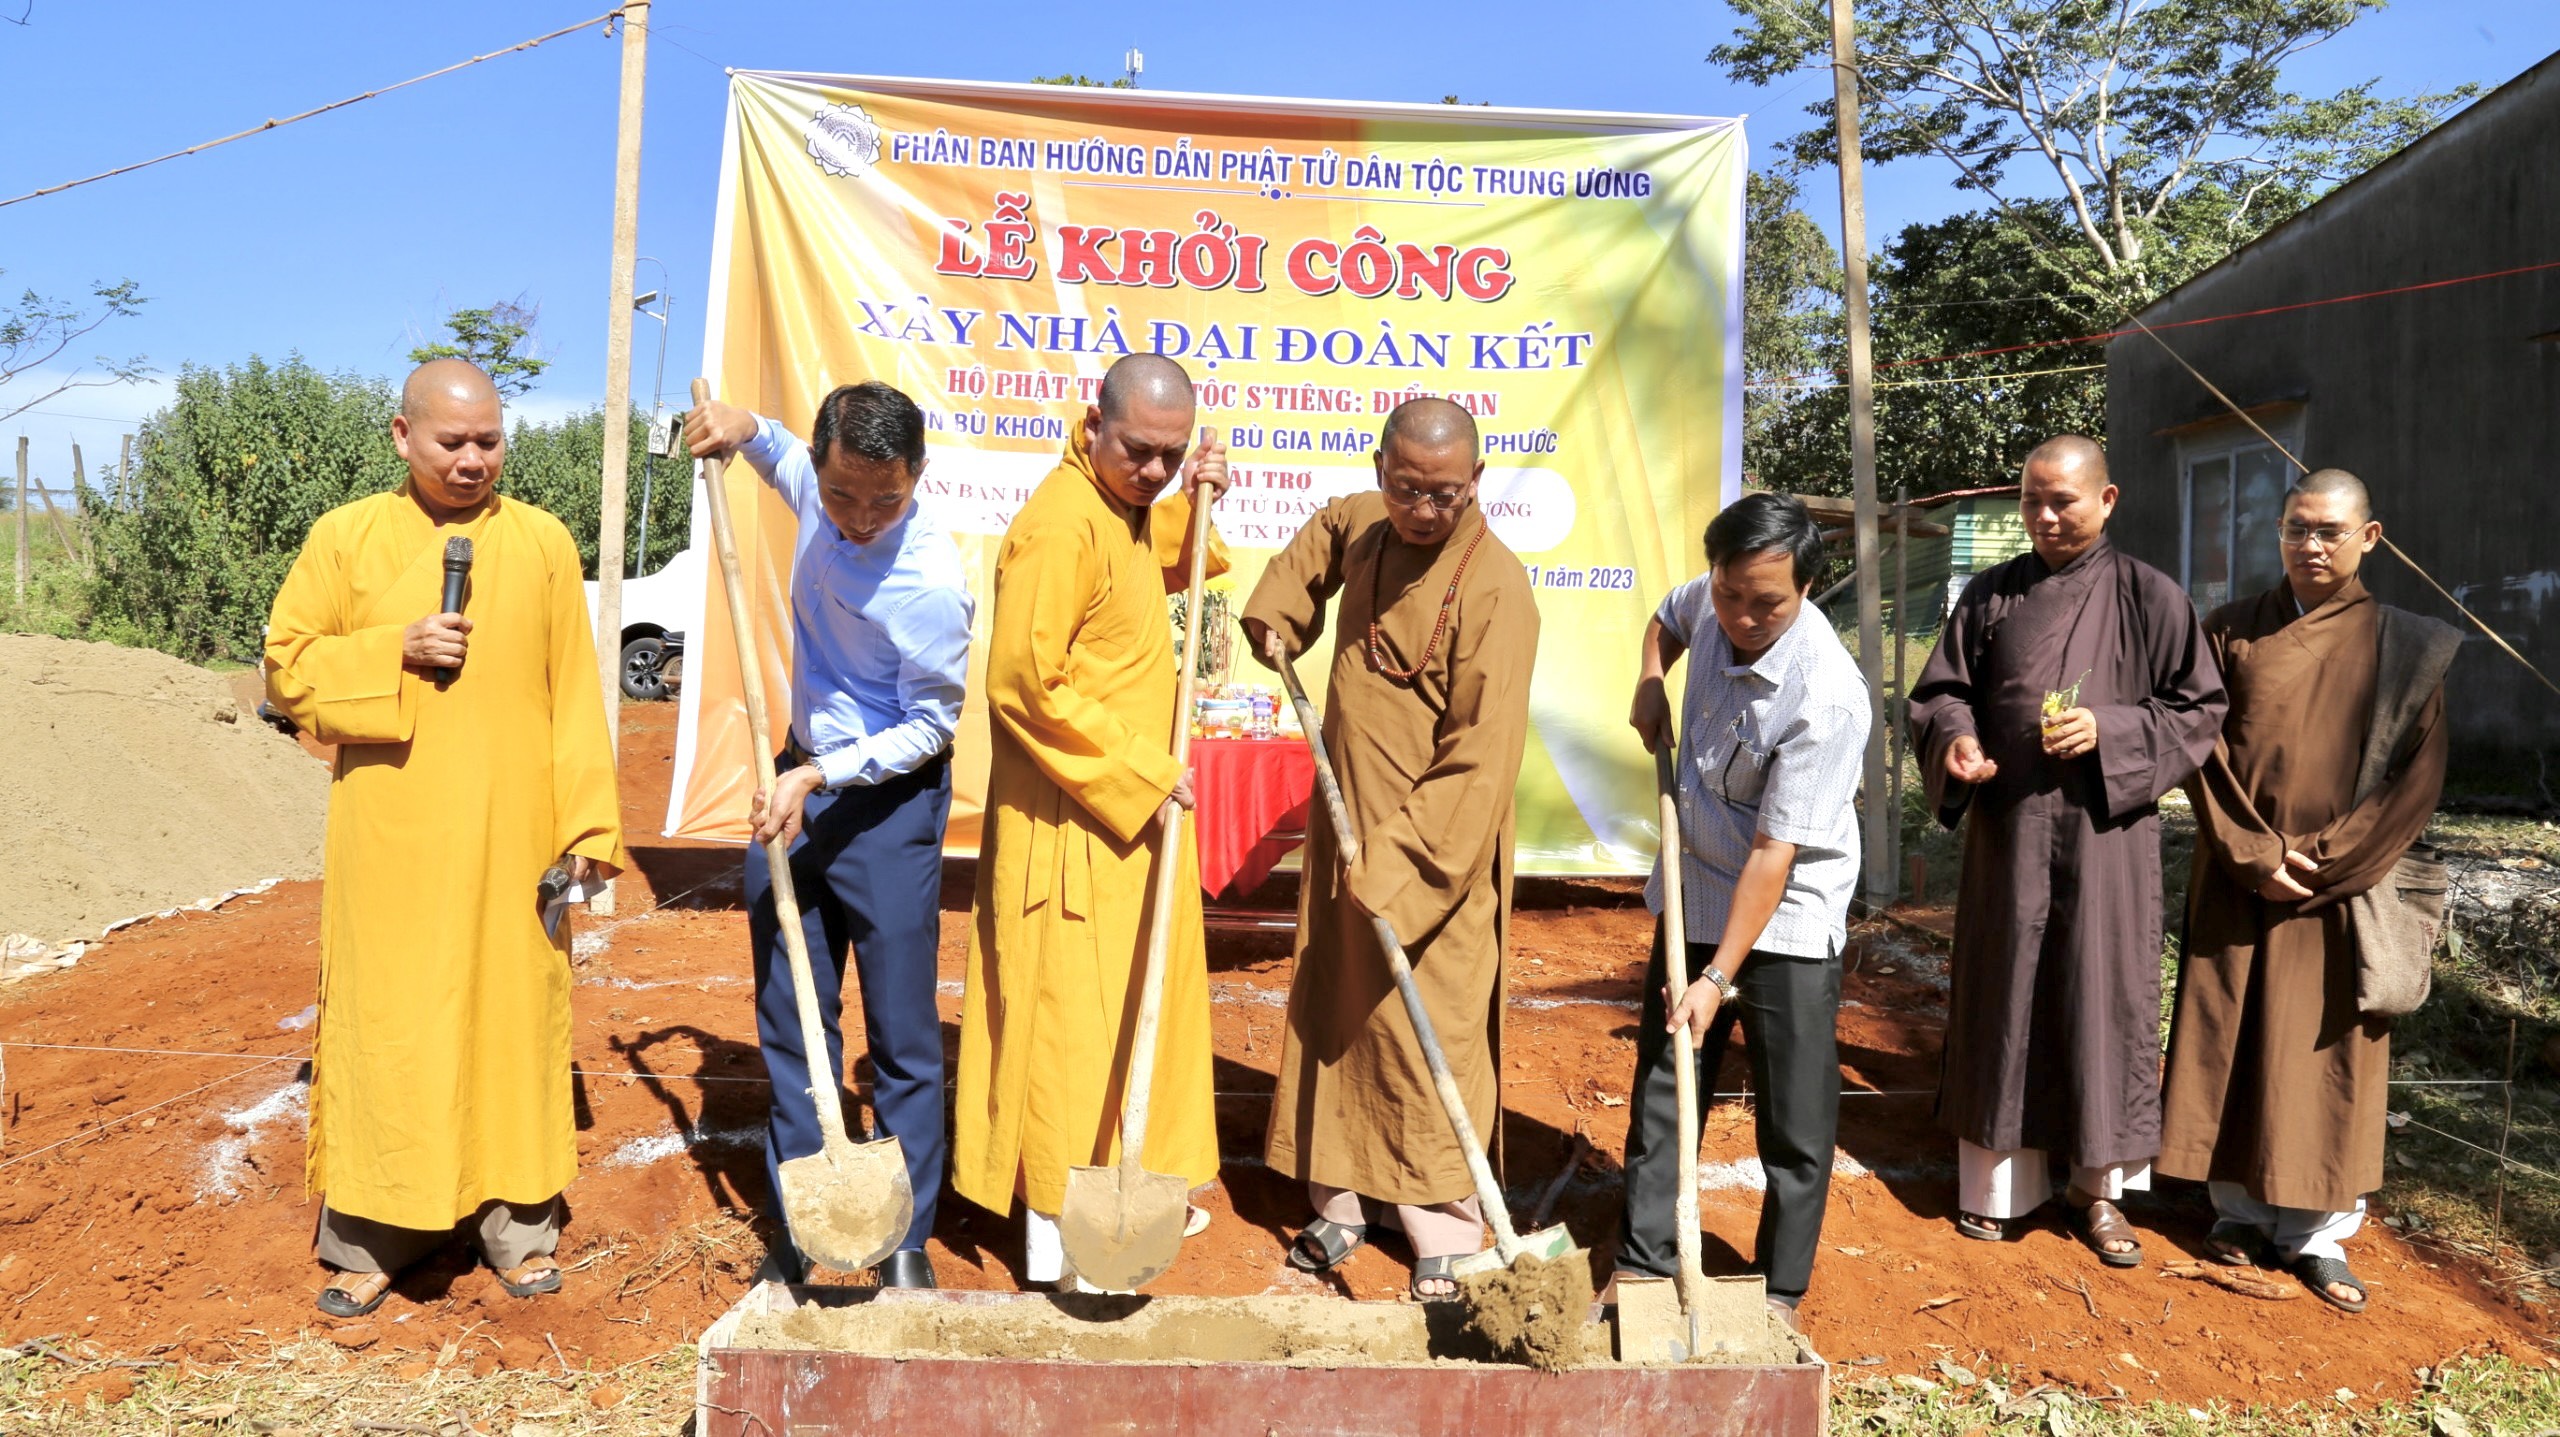 Phân Ban HDPT dân tộc TƯ GHPGVN xây nhà đại đoàn kết cho Phật tử dân tộc thiểu thứ 12